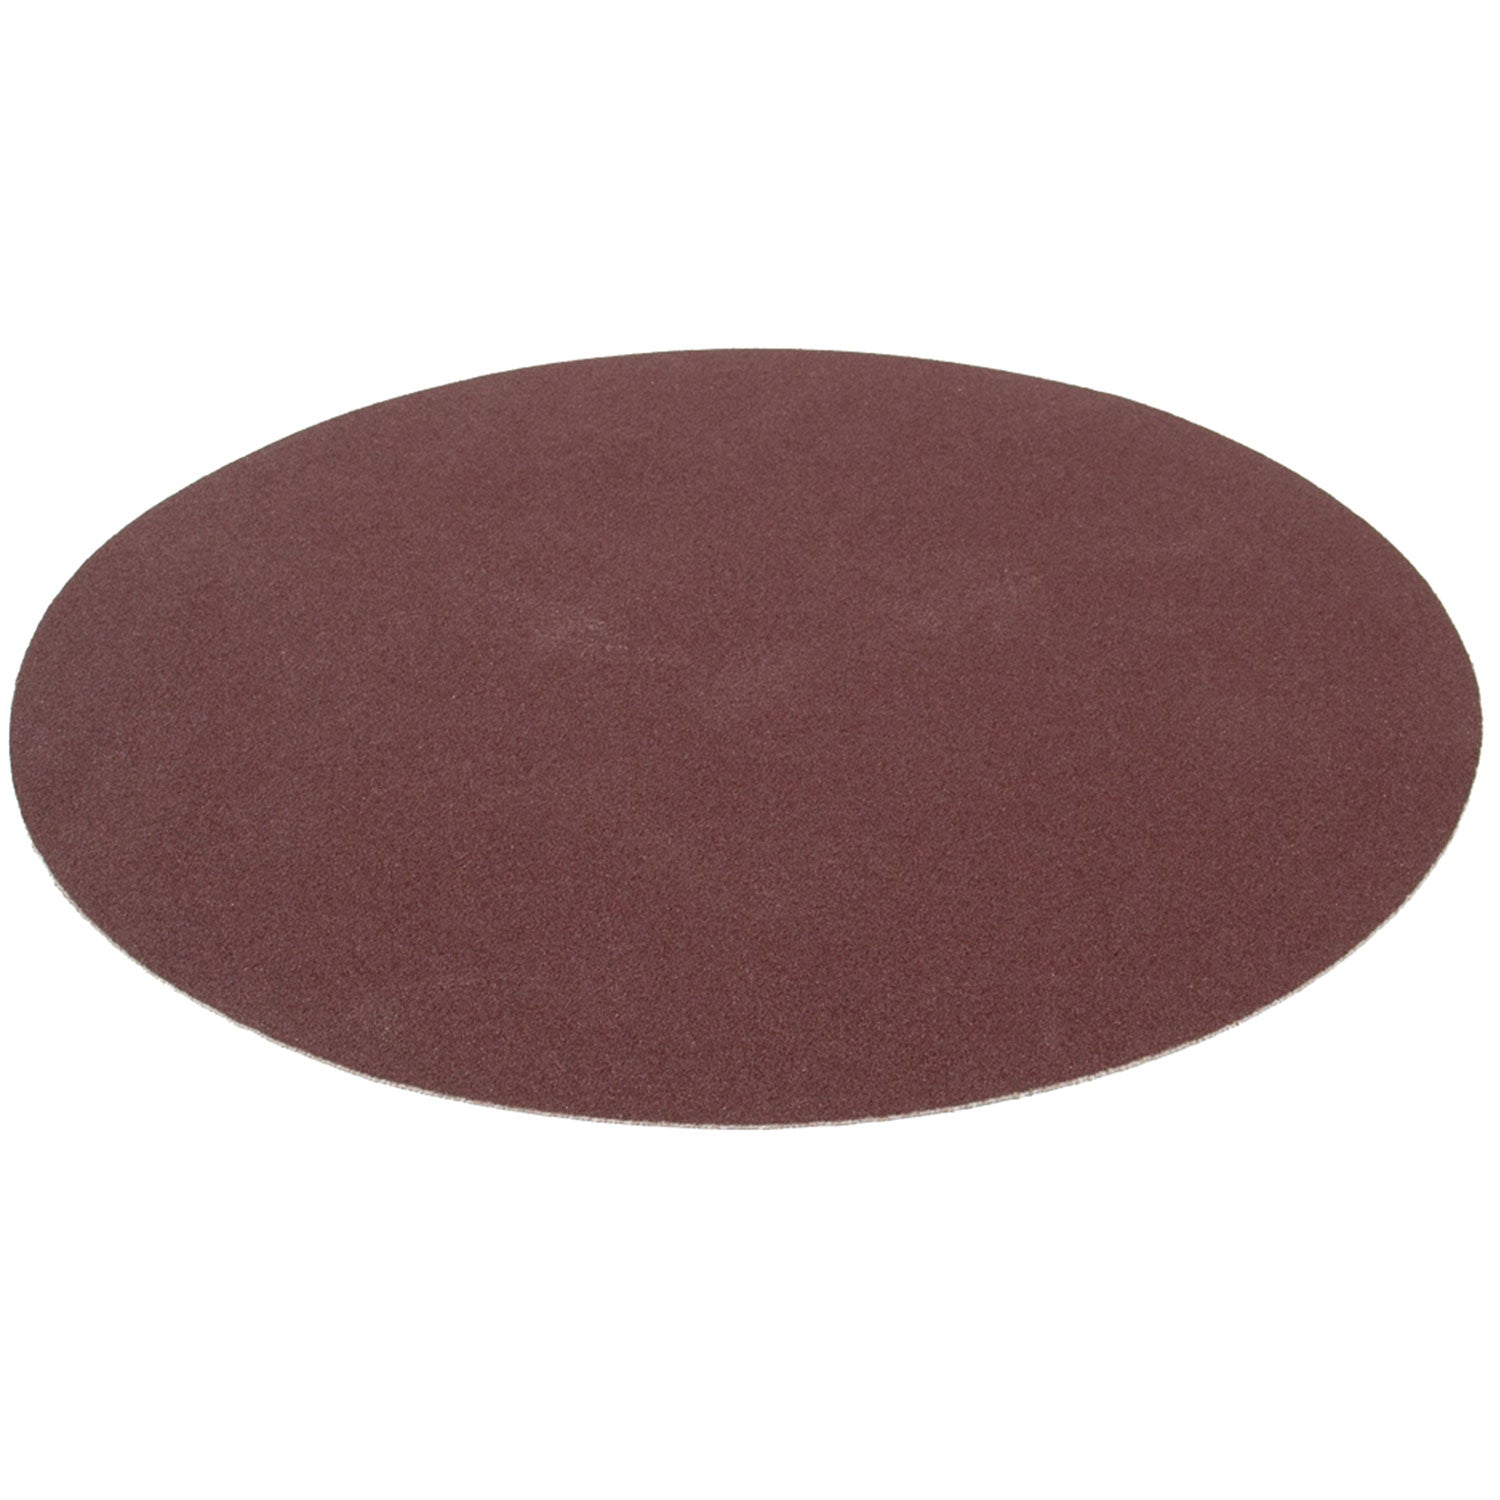 SIP 12" 80 Grit Medium Sanding Disc, Sip Industrial